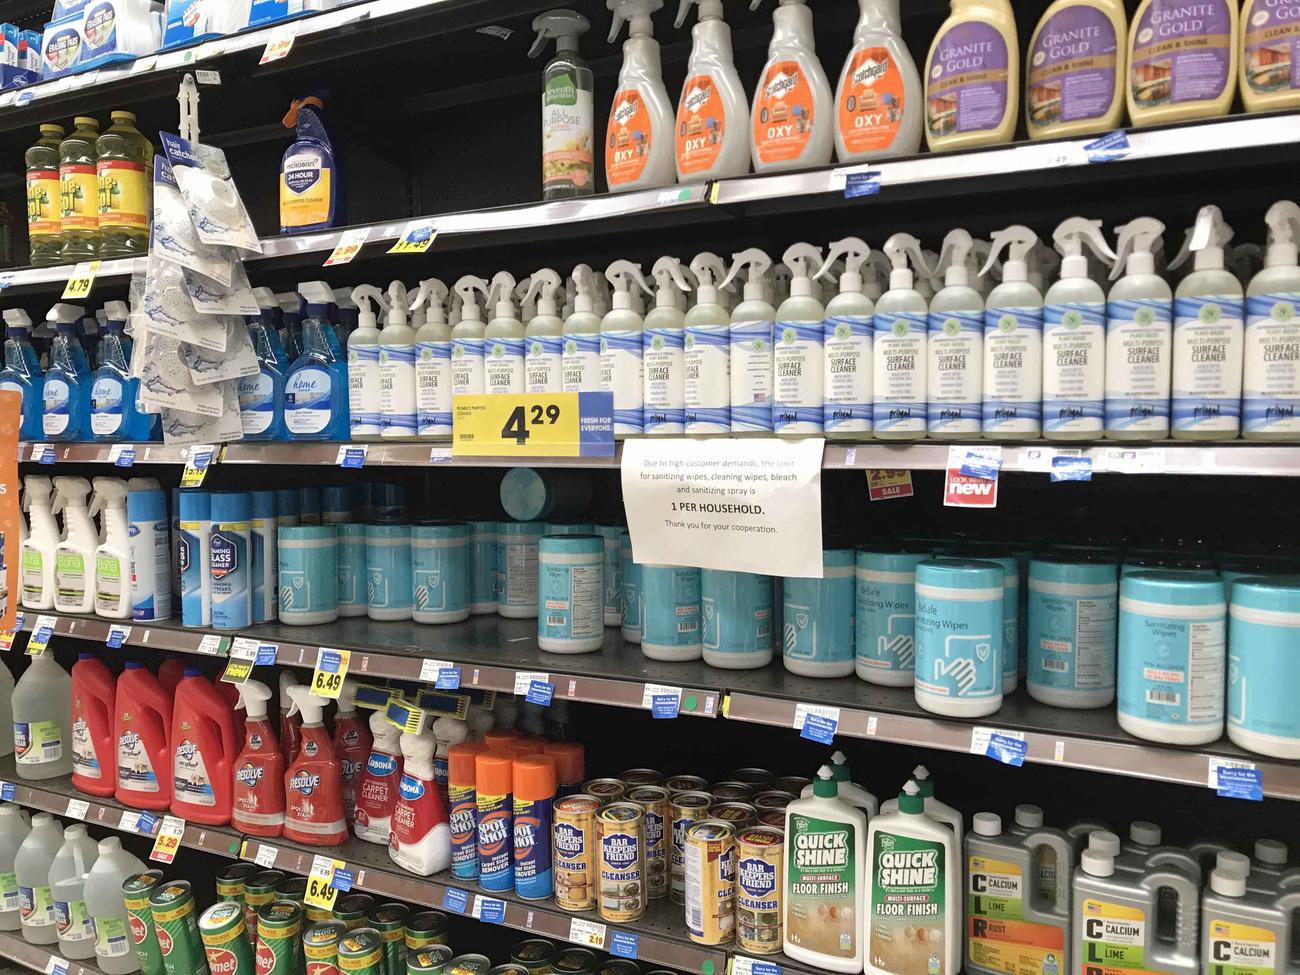 スーパーでは今も掃除用洗剤は品薄で、除菌ワイプや除菌洗剤は入手困難な状況が続いています